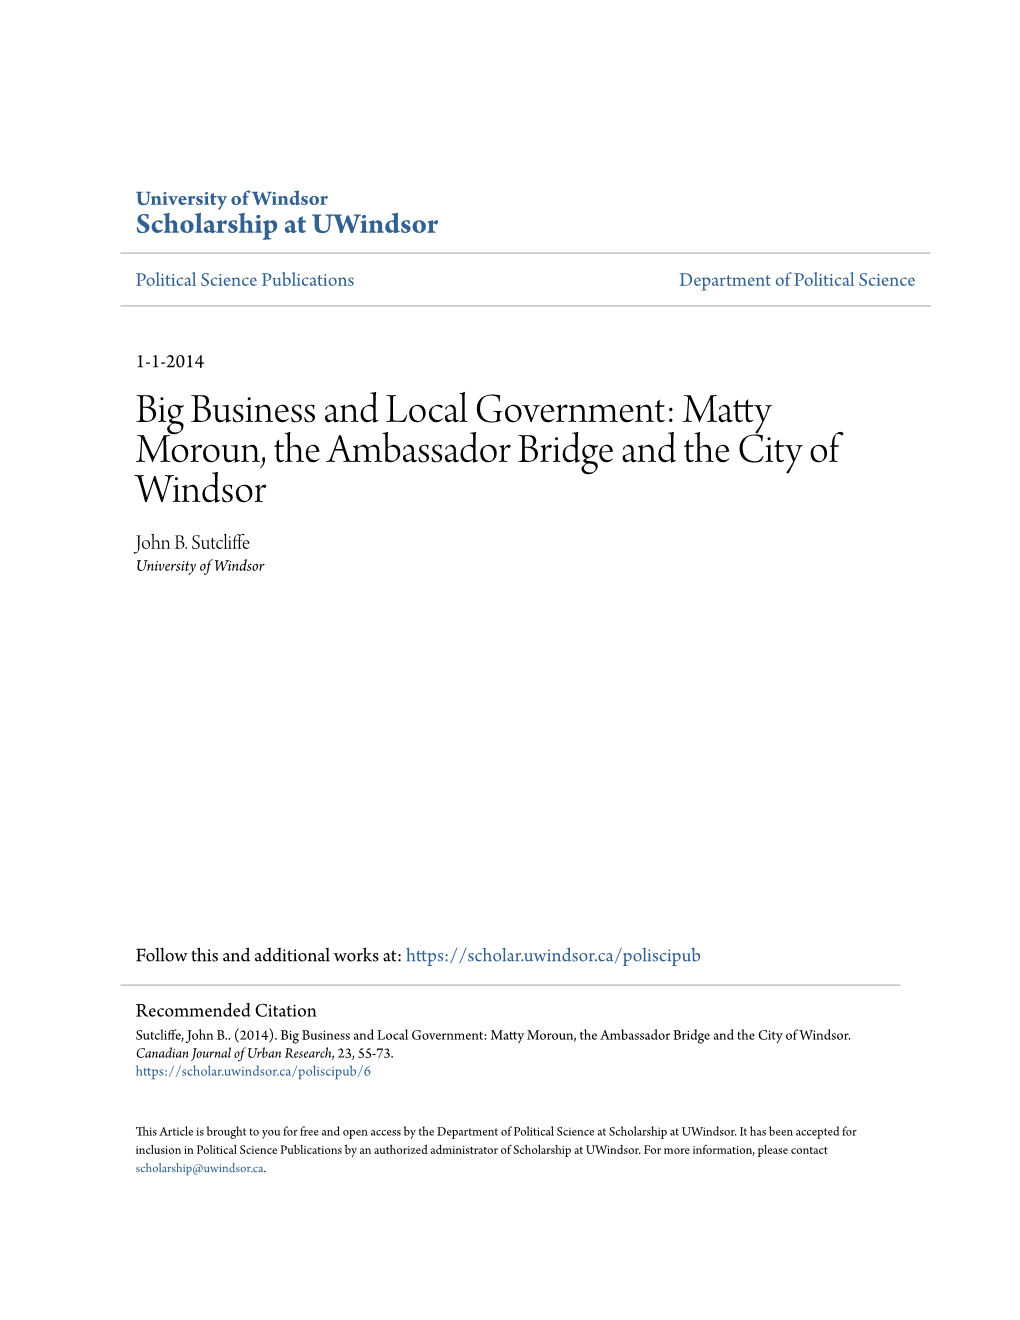 Matty Moroun, the Ambassador Bridge and the City of Windsor John B